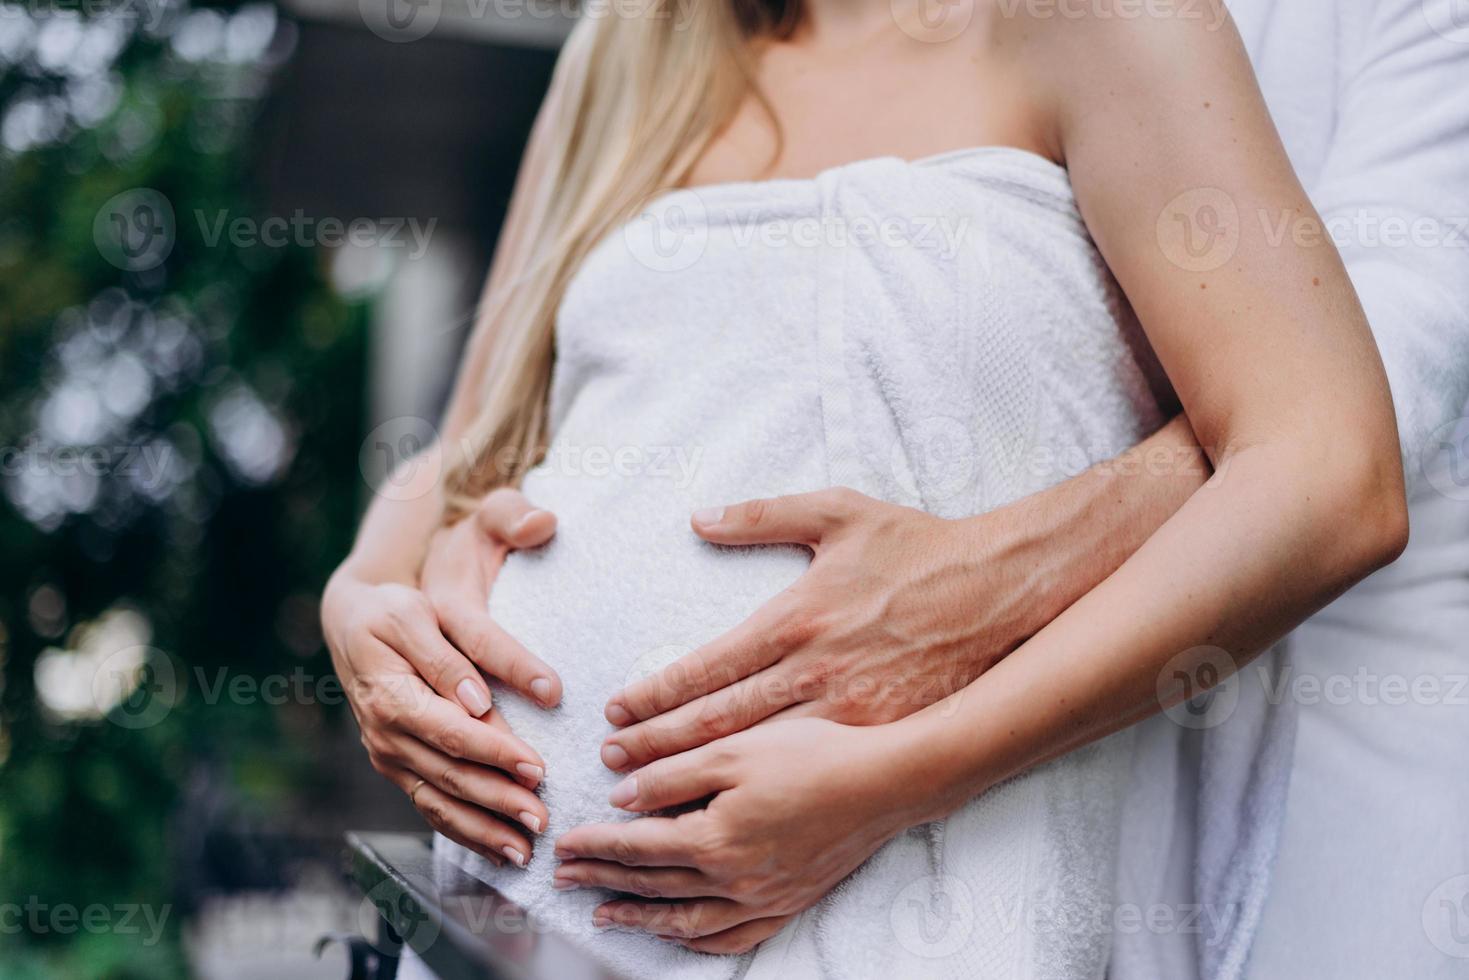 un hombre abraza a una mujer embarazada, cerrar el vientre foto